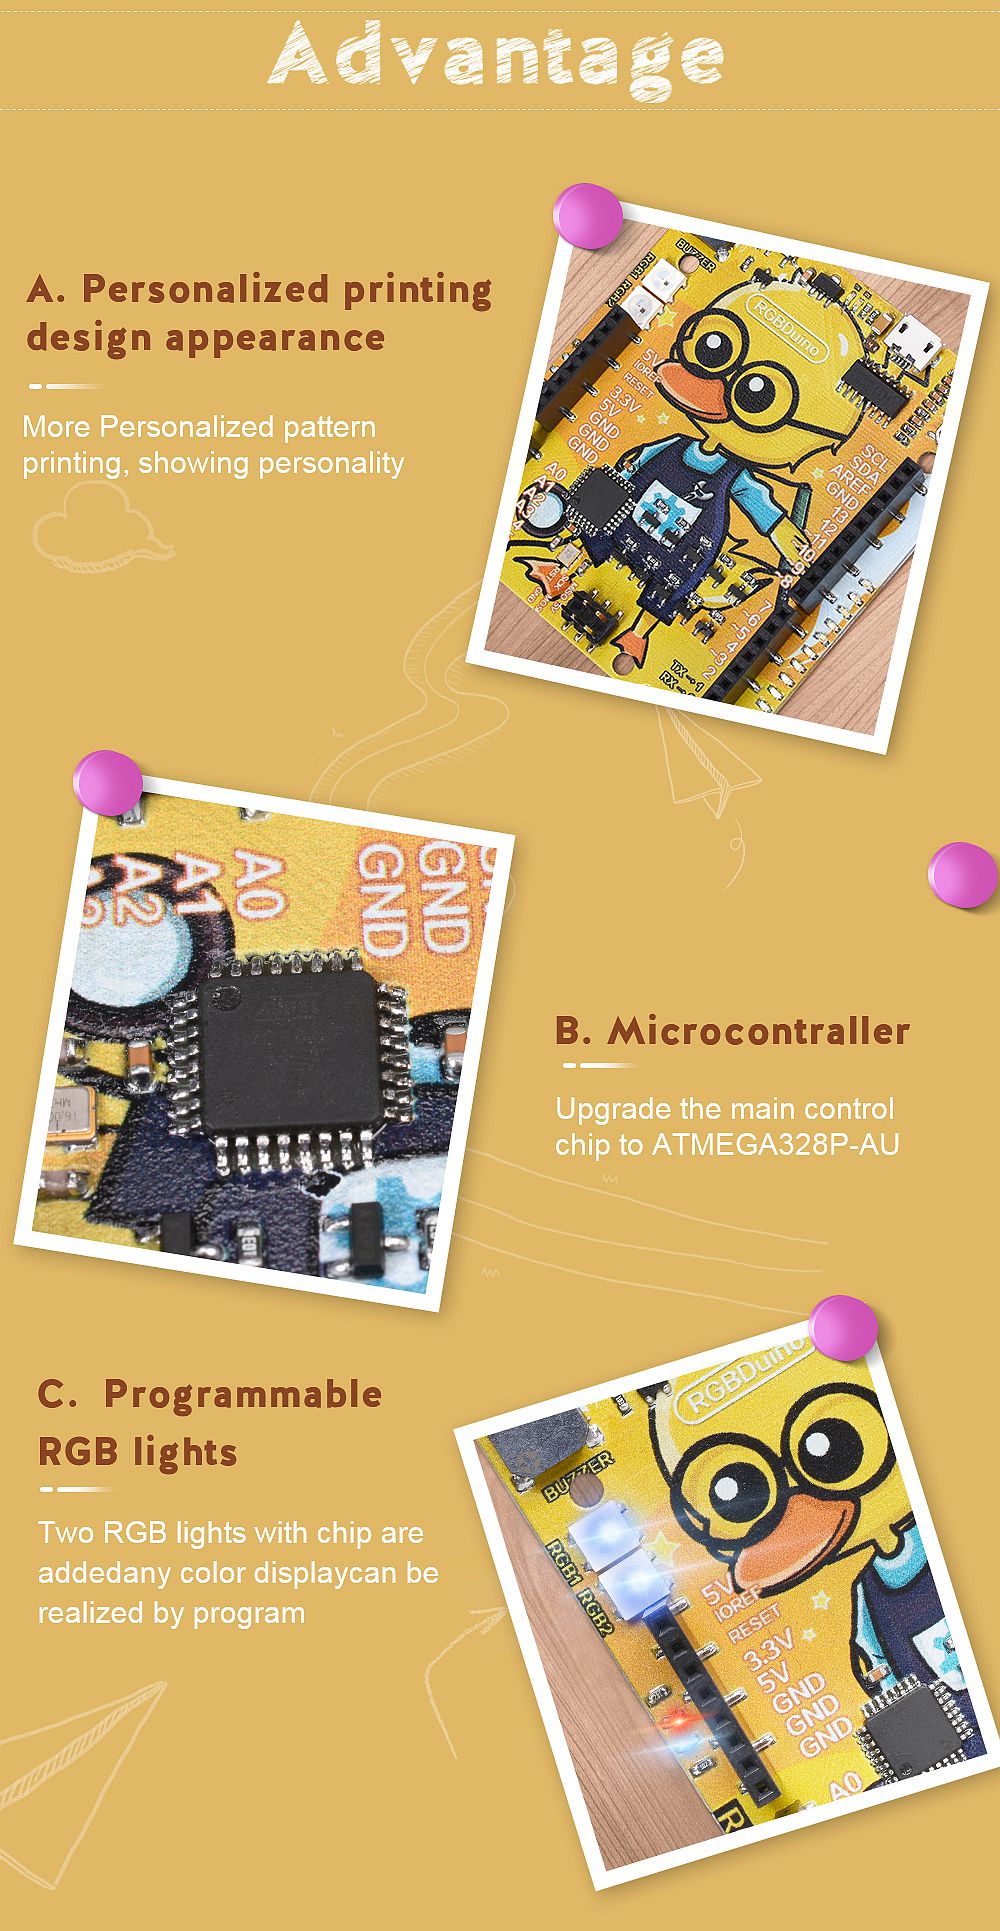 RGBDuino-UN0-V11-Geek-Duck-Development-Board-ATmega328P-CH340C-Micro-USB-Vs-UN0-R3-for-Raspberry-Pi--1732457